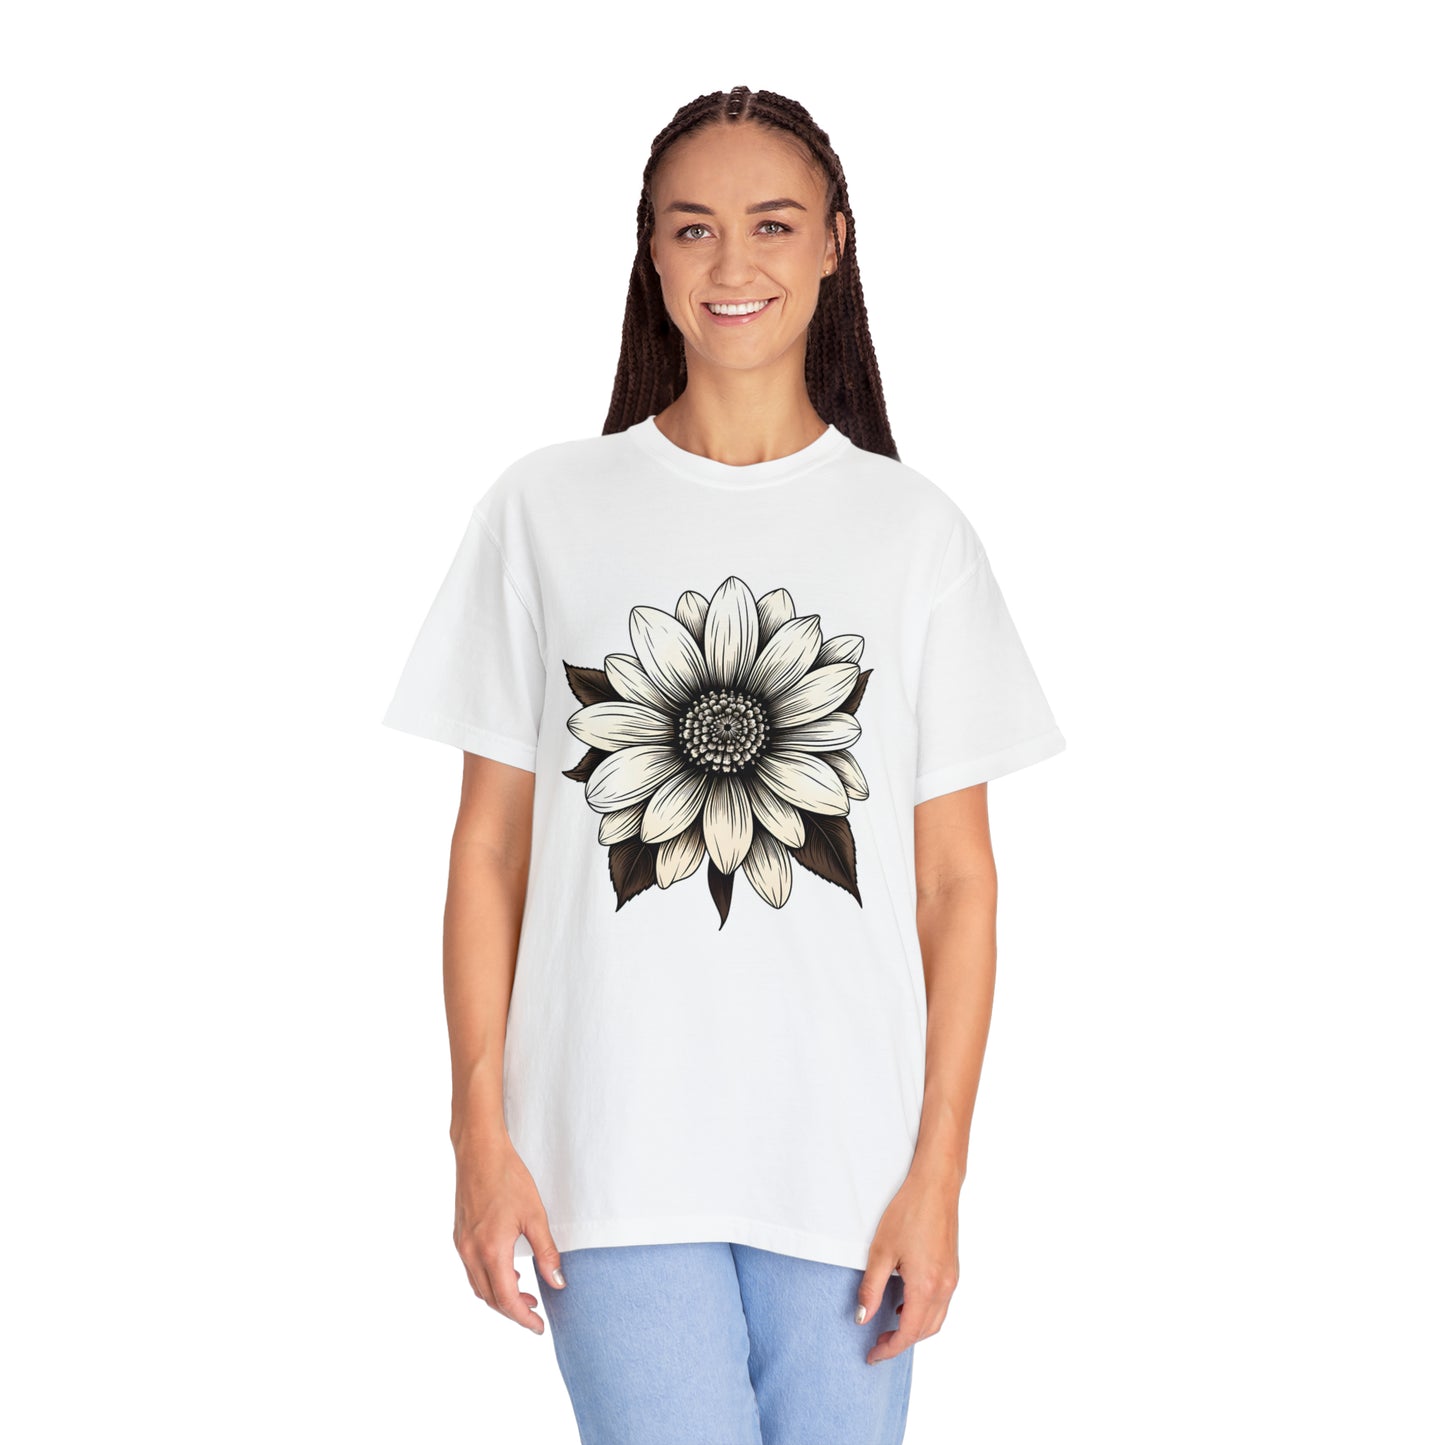 Sunflower Shirt Flower Shirt Aesthetic  Women Top Floral Graphic Tee Floral Shirt Flower T-shirt, Wild Flower Shirt Gift For Her